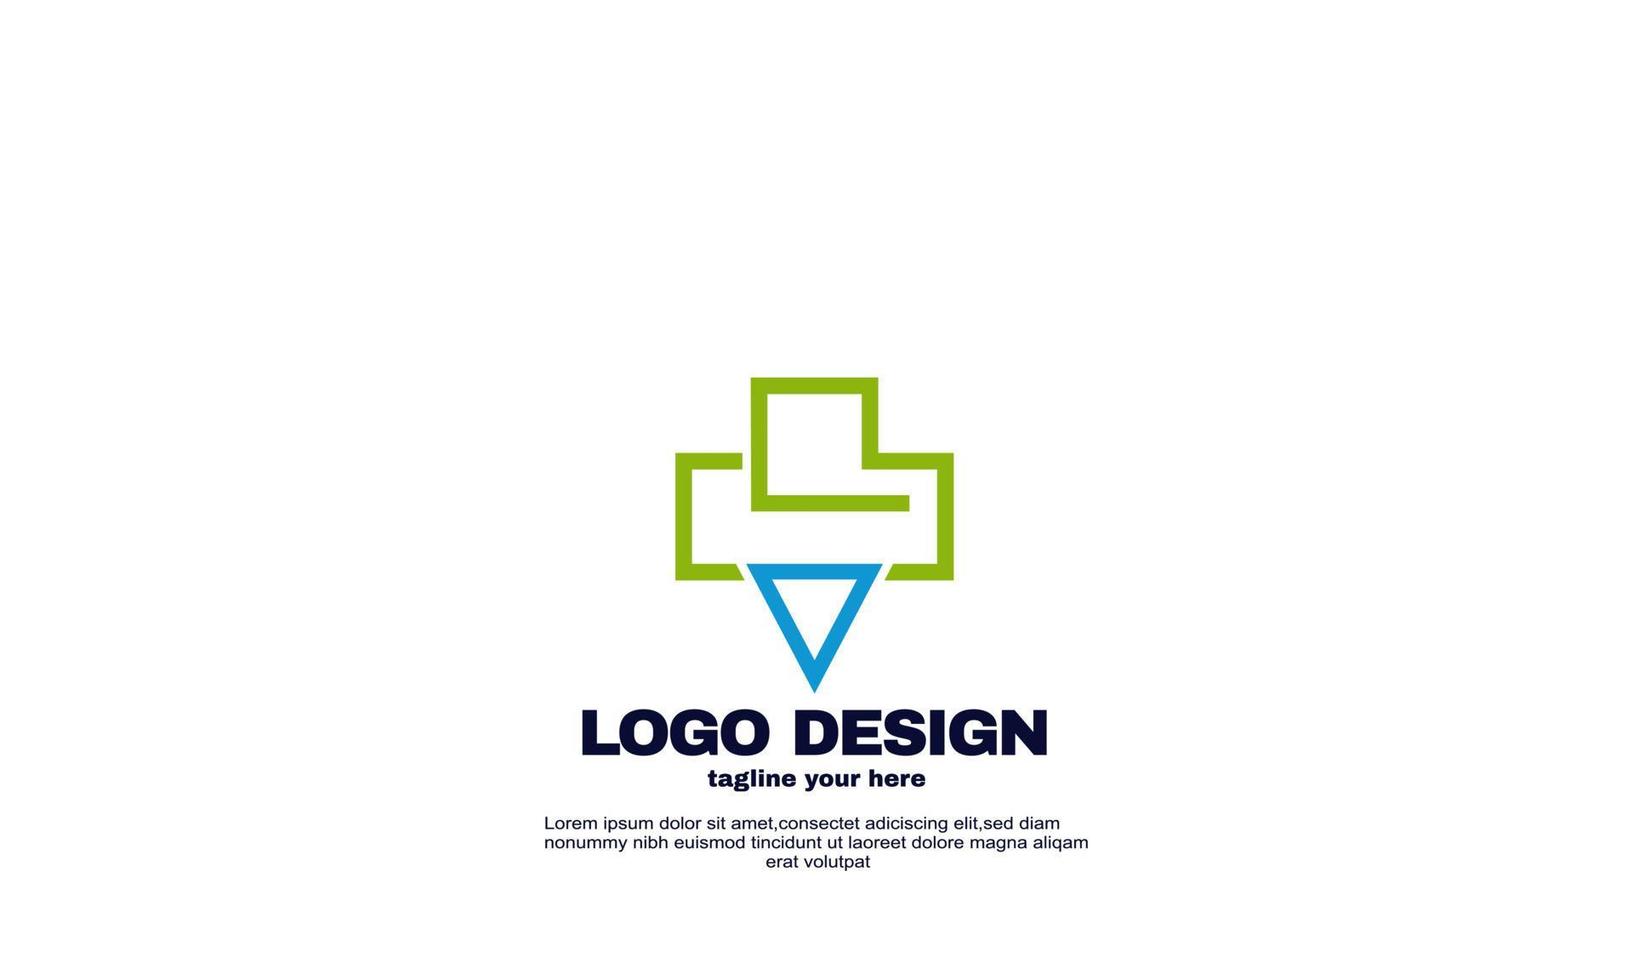 impresionante vector de plantilla de diseño de logotipo de triángulo de salud